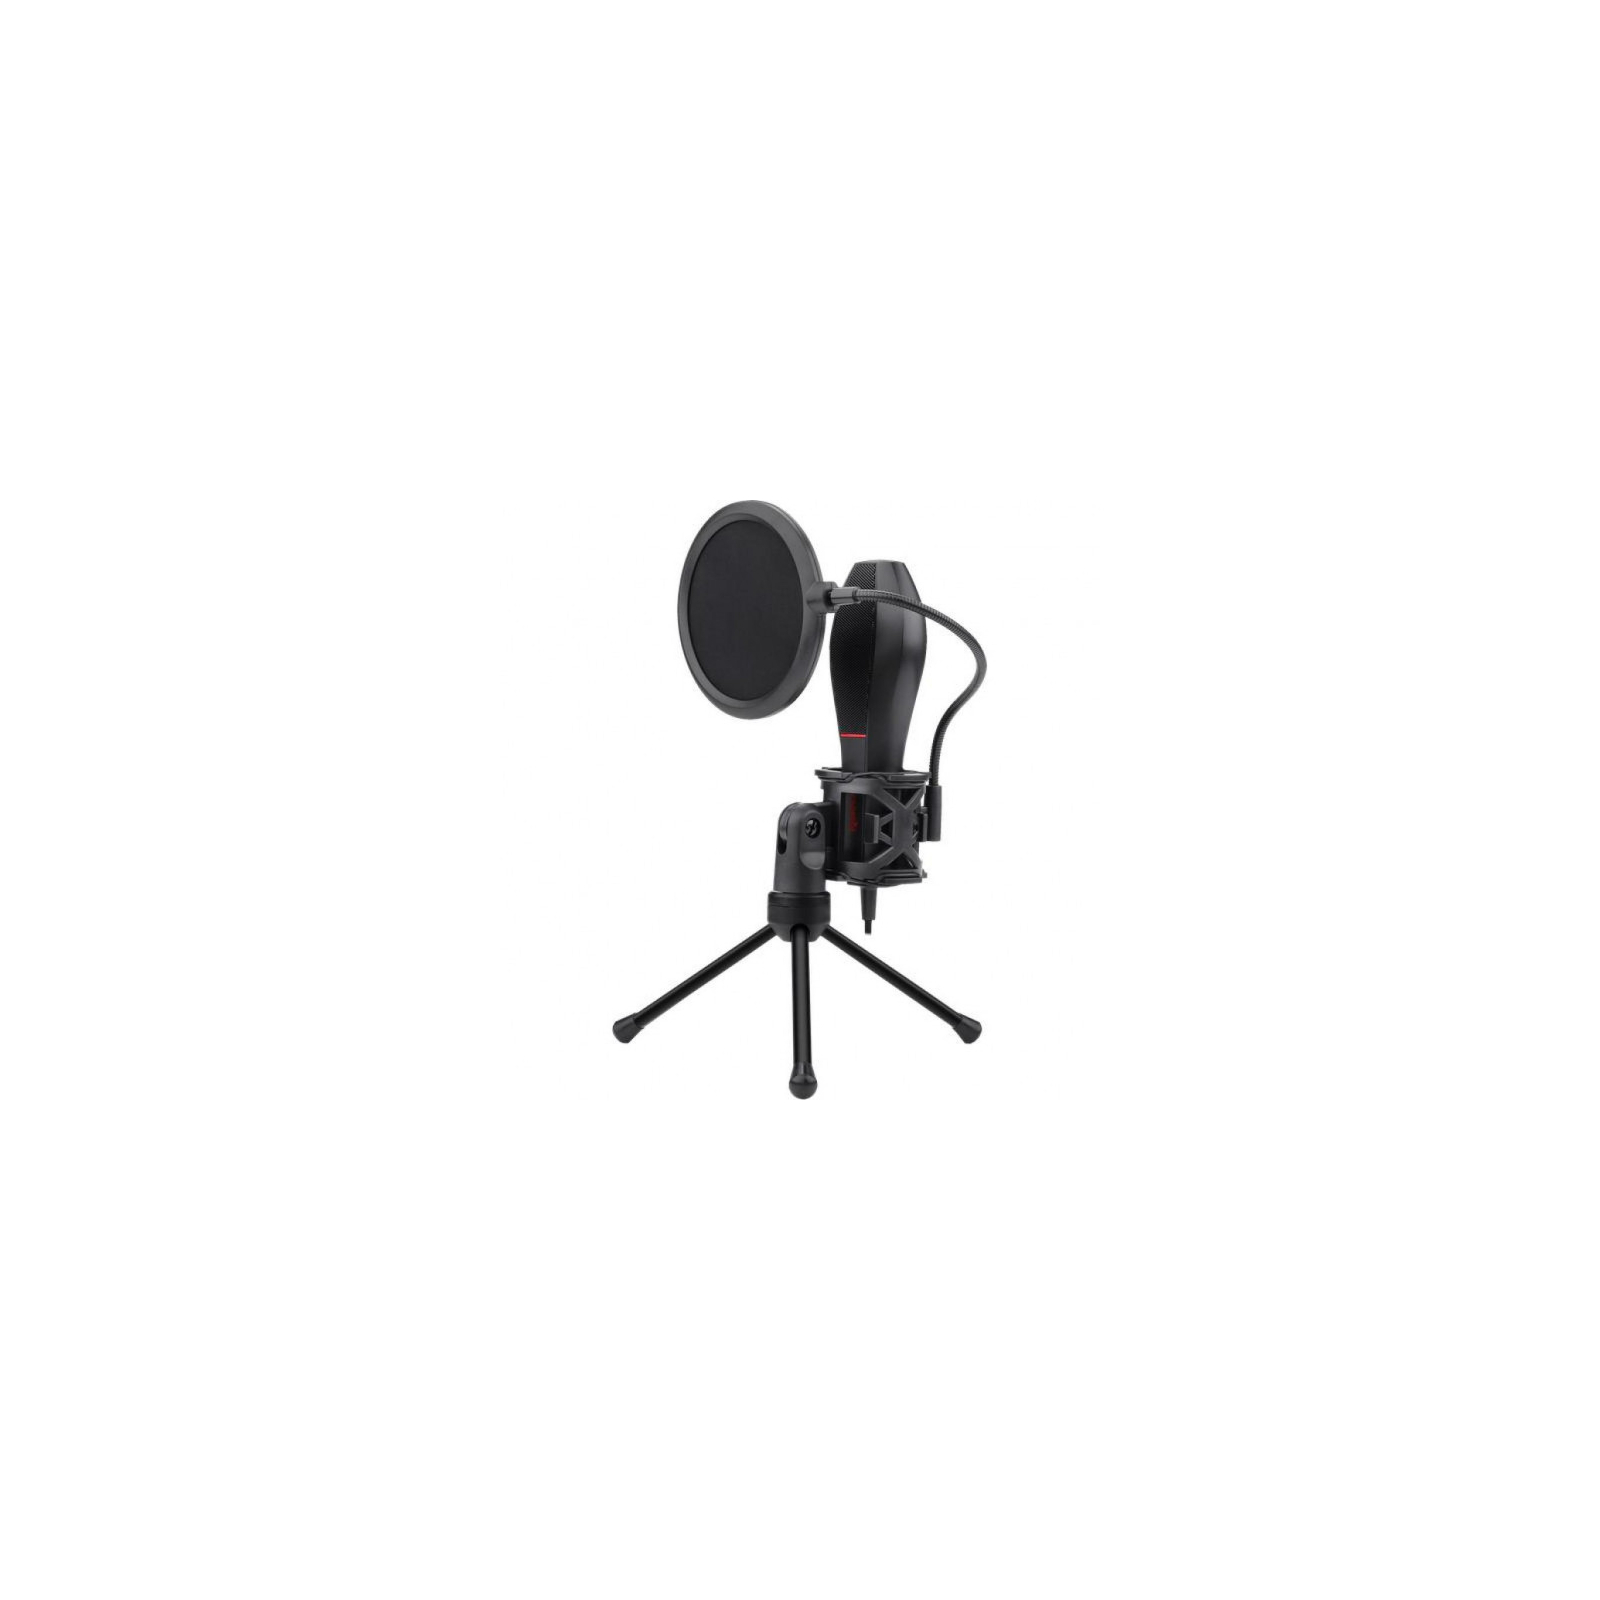 Микрофон Redragon Quasar 2 GM200-1 USB (78089)